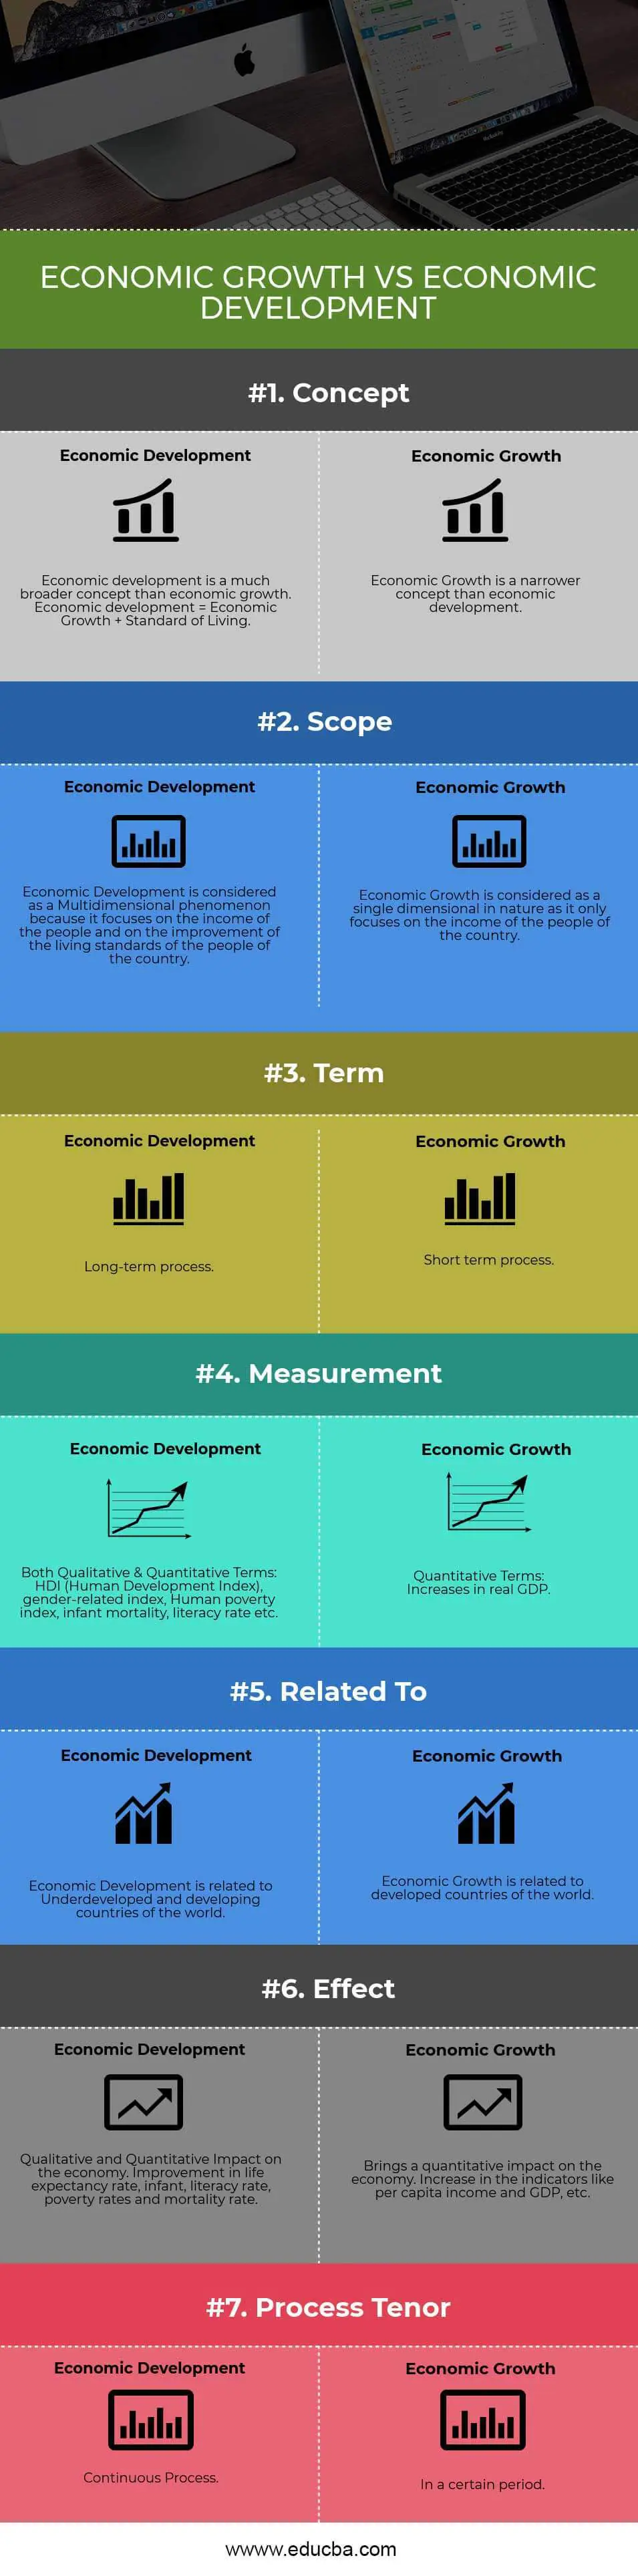 Crecimiento económico versus desarrollo económico